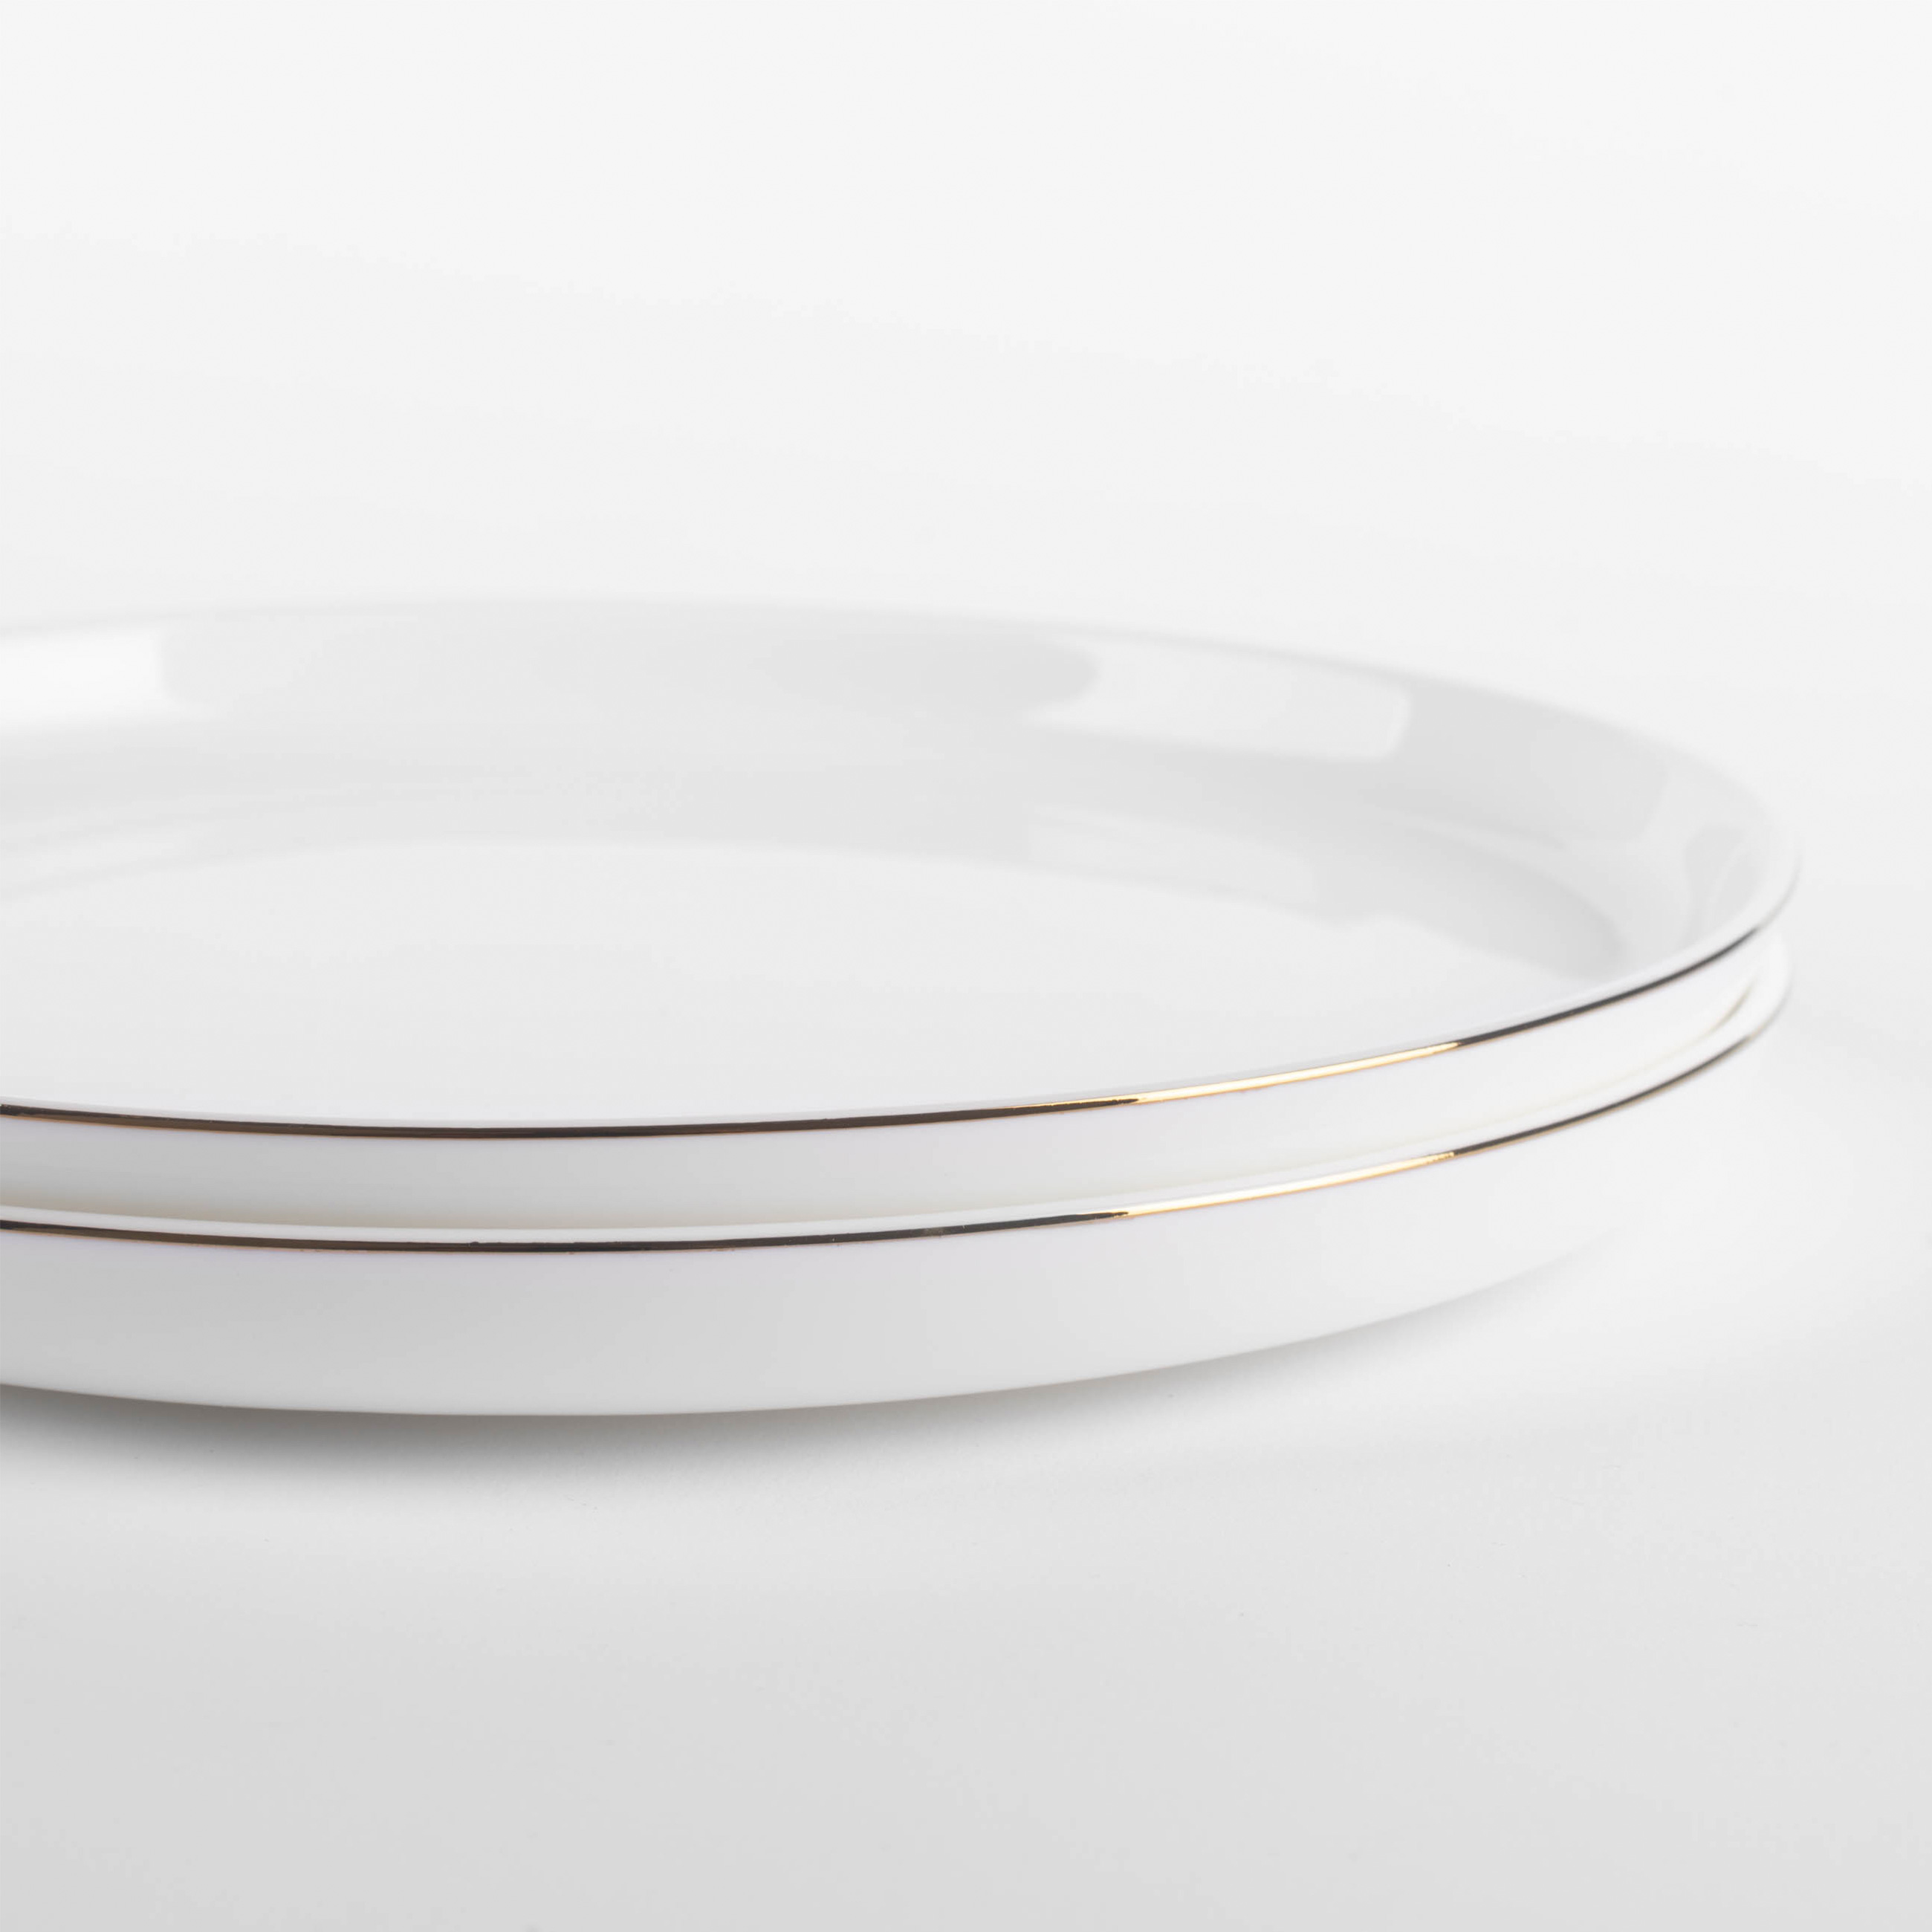 Dessert plate, 20 cm, 2 pieces, porcelain F, white, Ideal gold изображение № 2